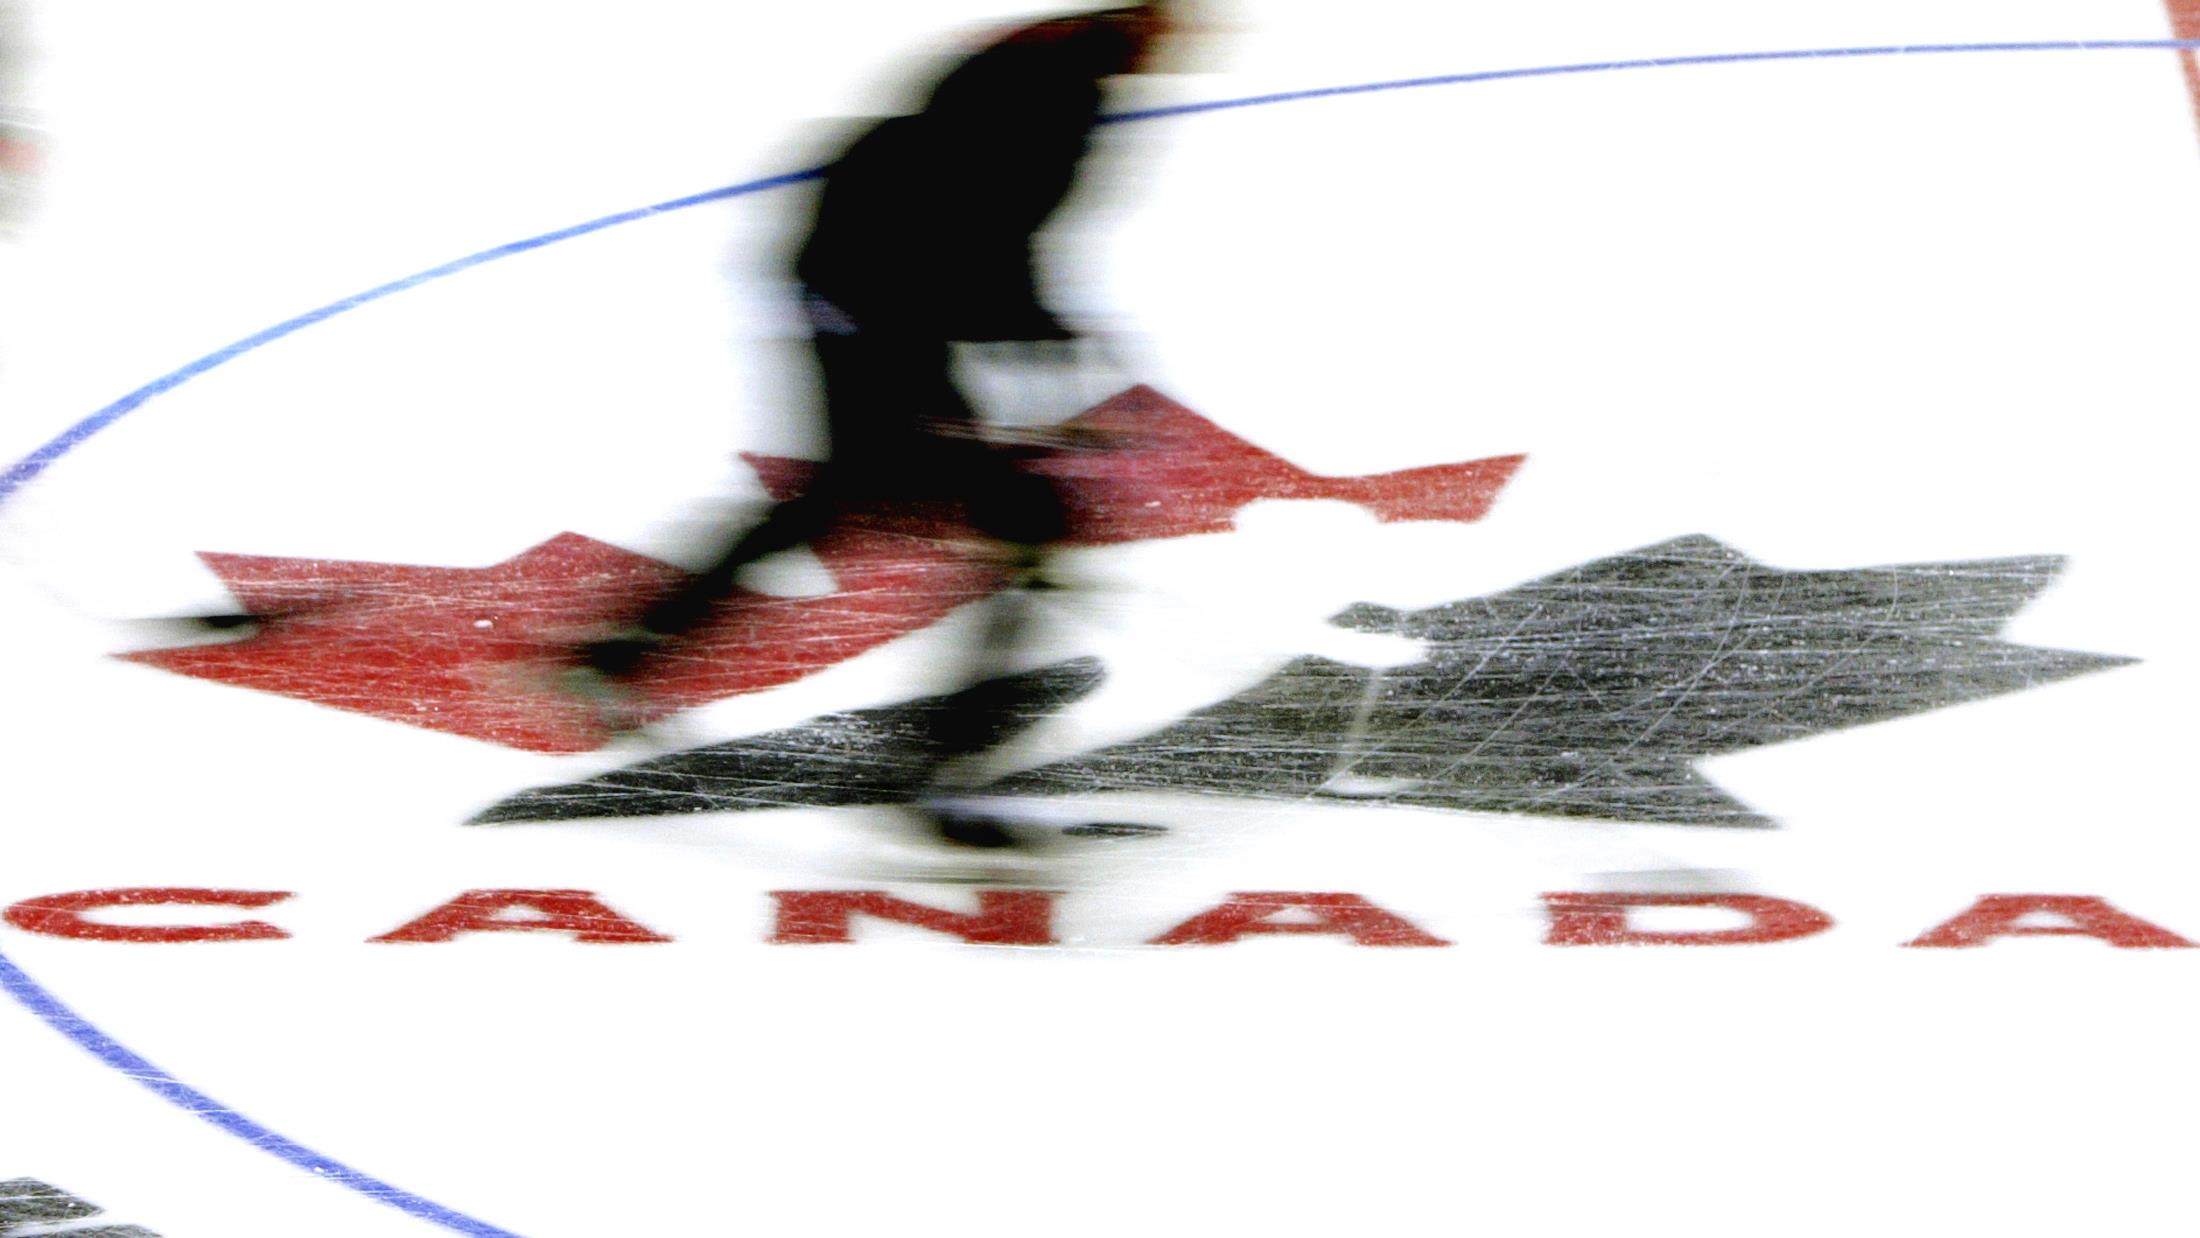 Retour sur les affaires d'abus sexuel au hockey
Retour sur les affaires d'abus sexuel au hockey